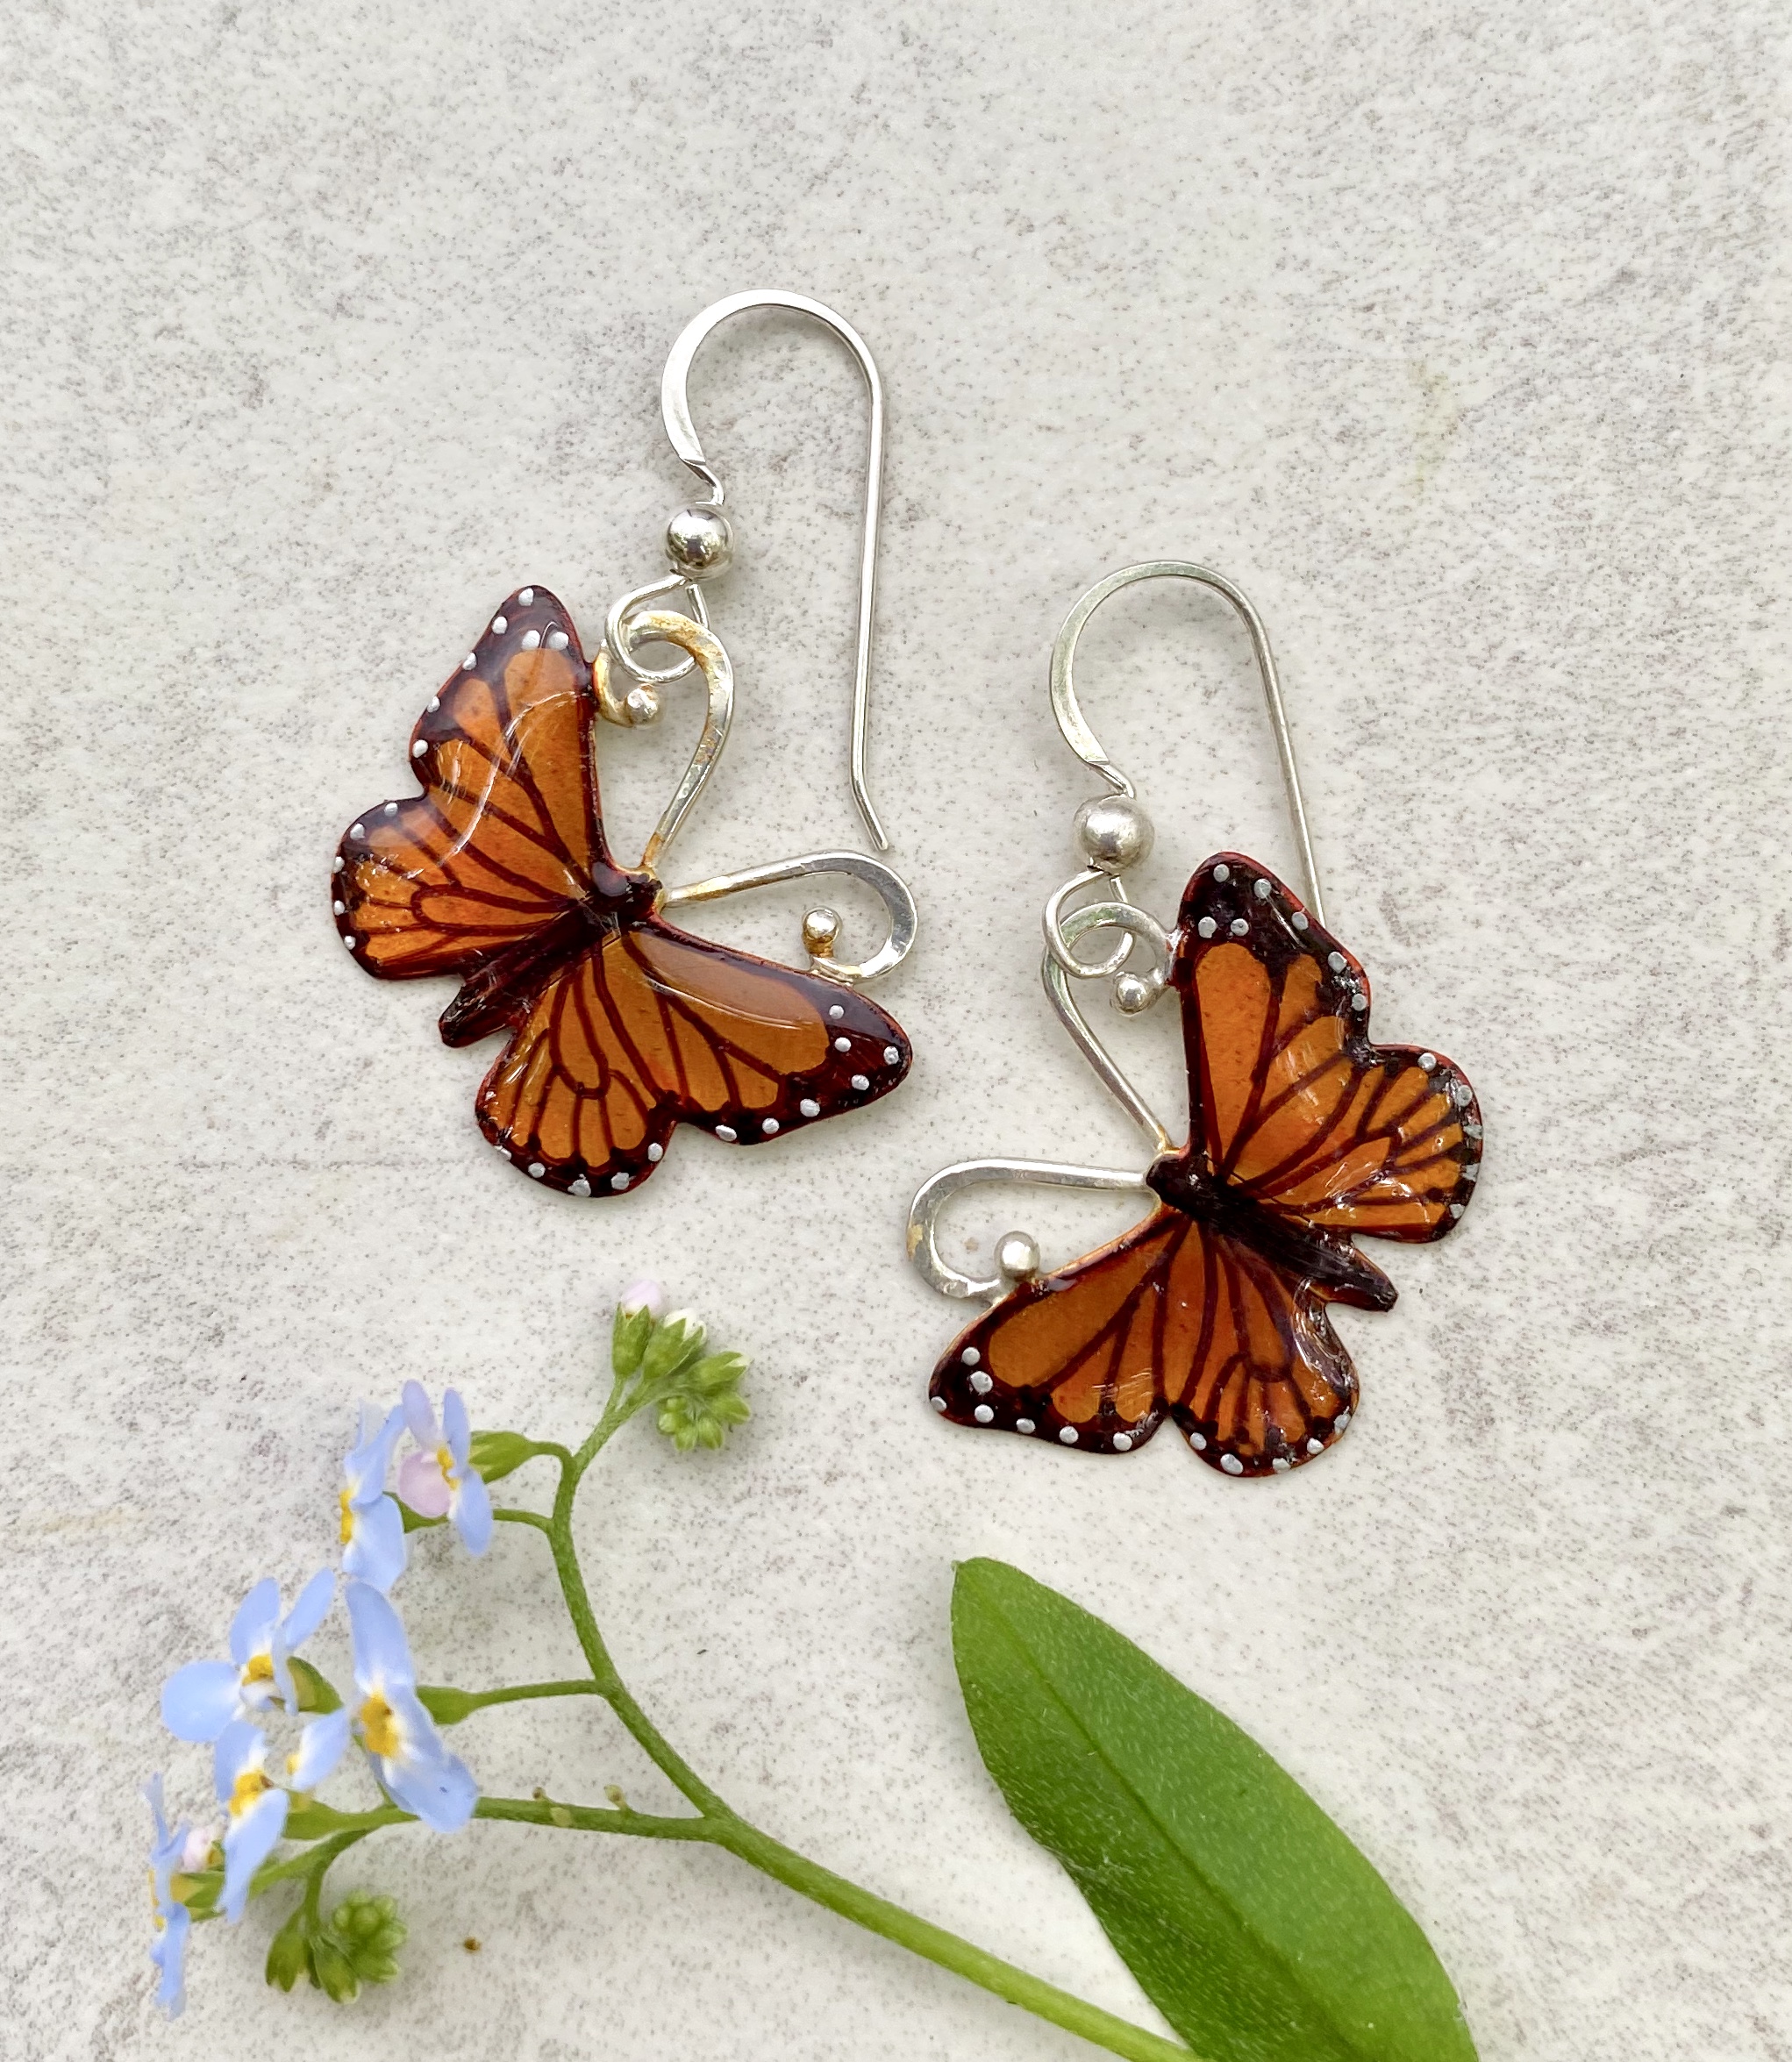 Silver Butterfly earrings, 1 1/4